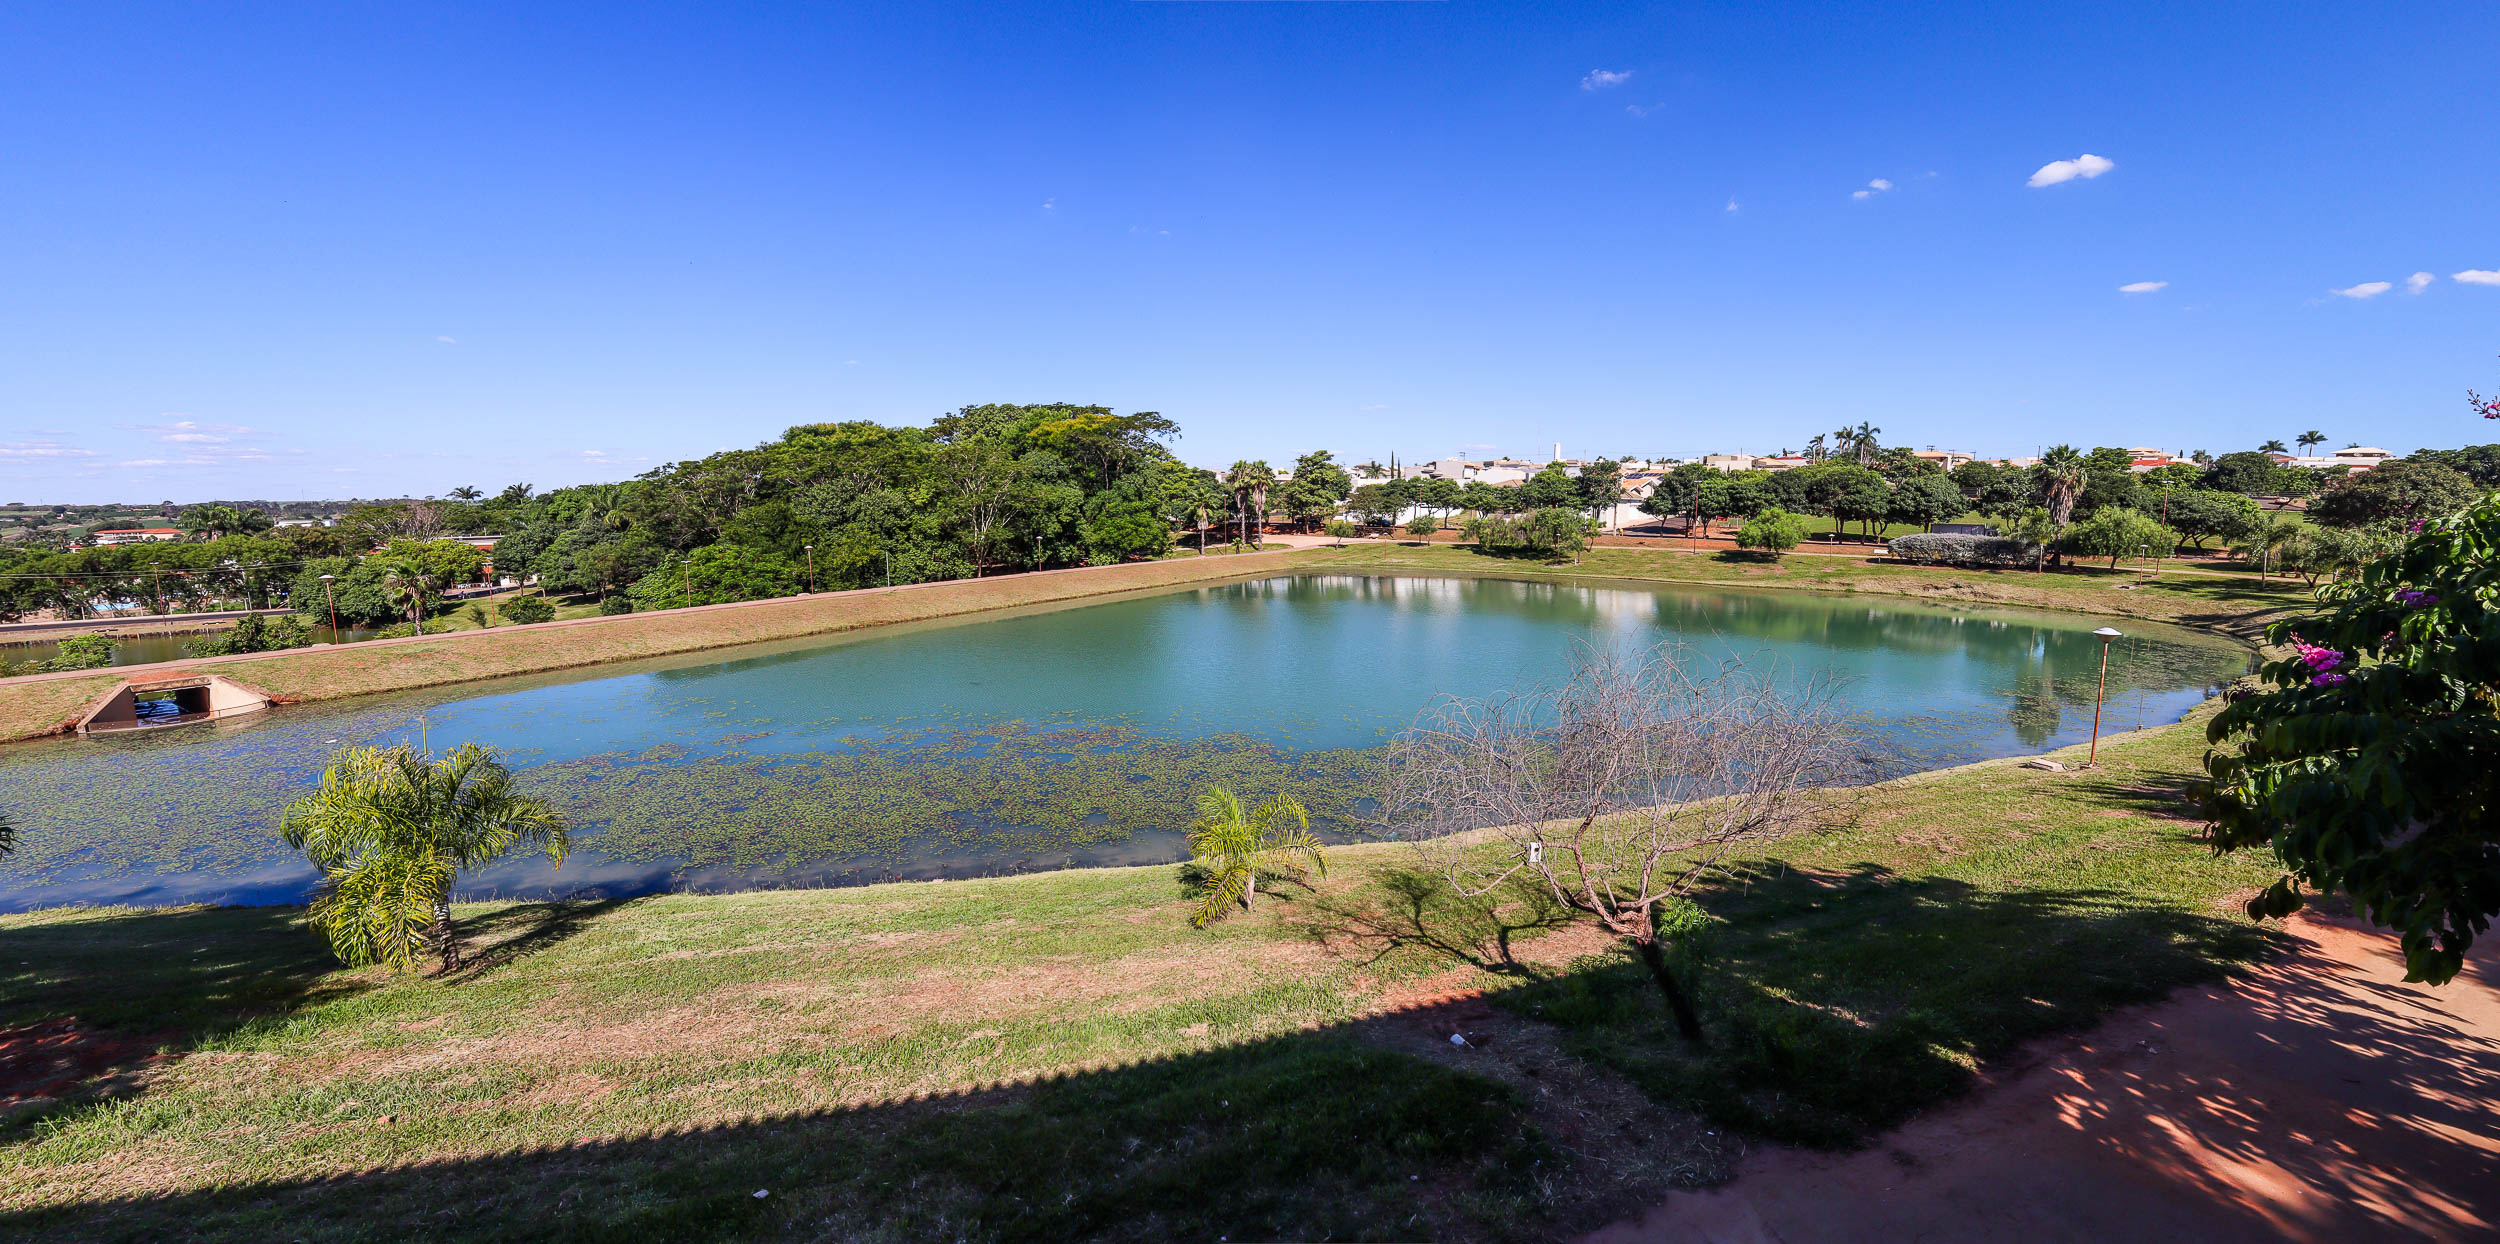 Lagoa de Urupês, que será revitalizada, vista da nova lanchonete. Foto: Luís Fernando da Silva / Prefeitura Municipal de Urupês.